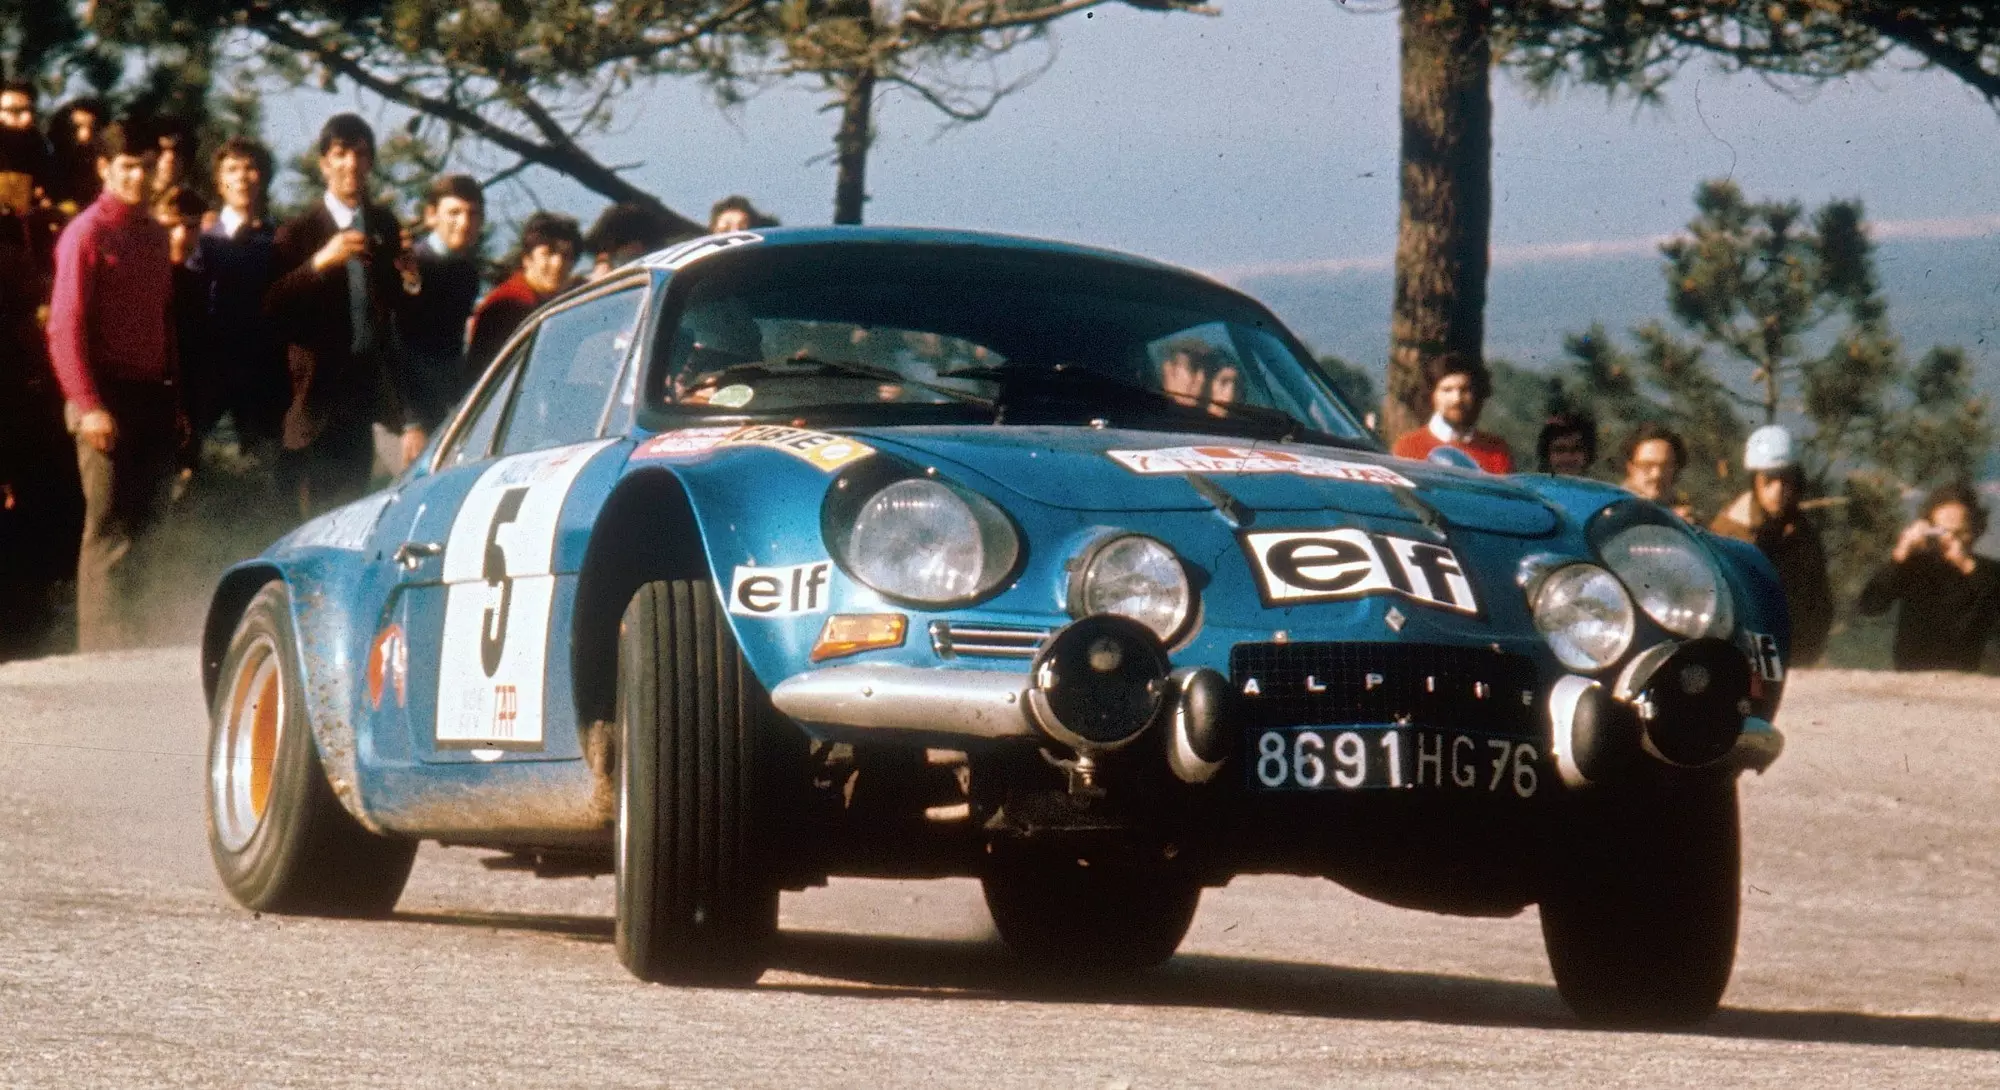 1973 – Alpine A110 1800 S – Жан-Люк Терье